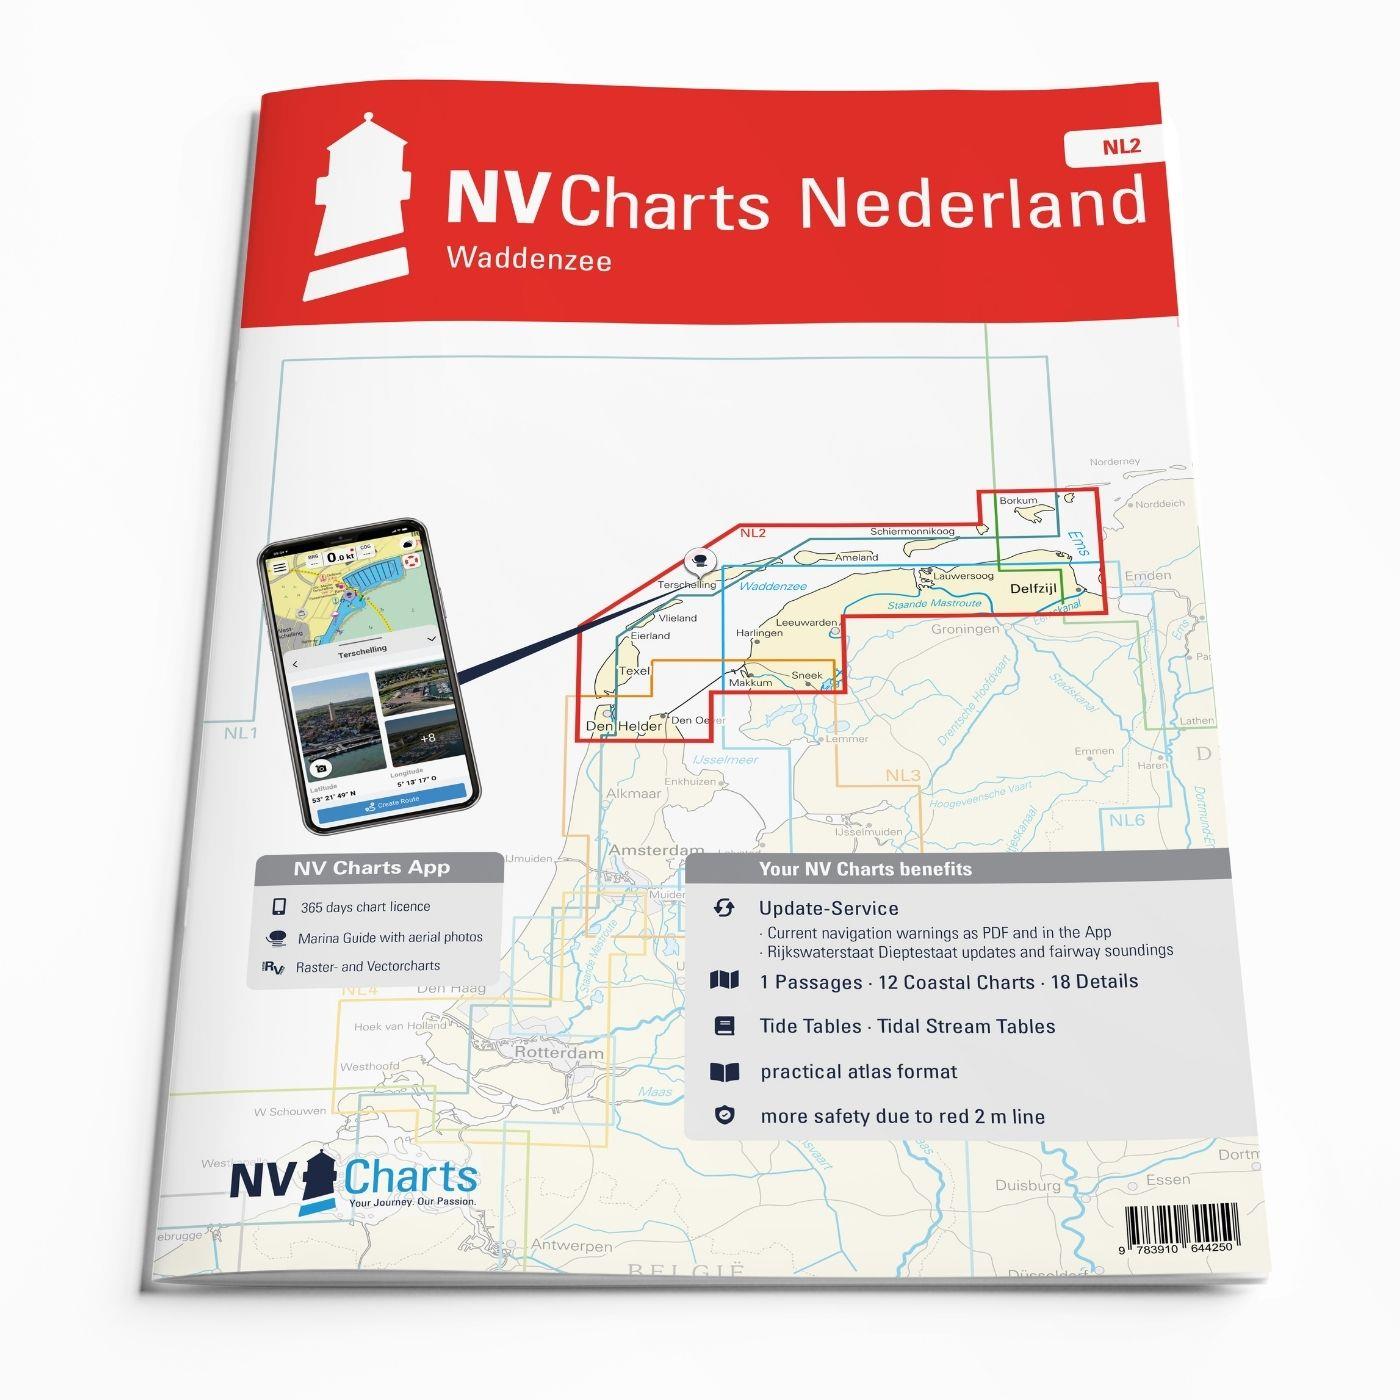 NV Charts Nederland NL2 - Waddenzee